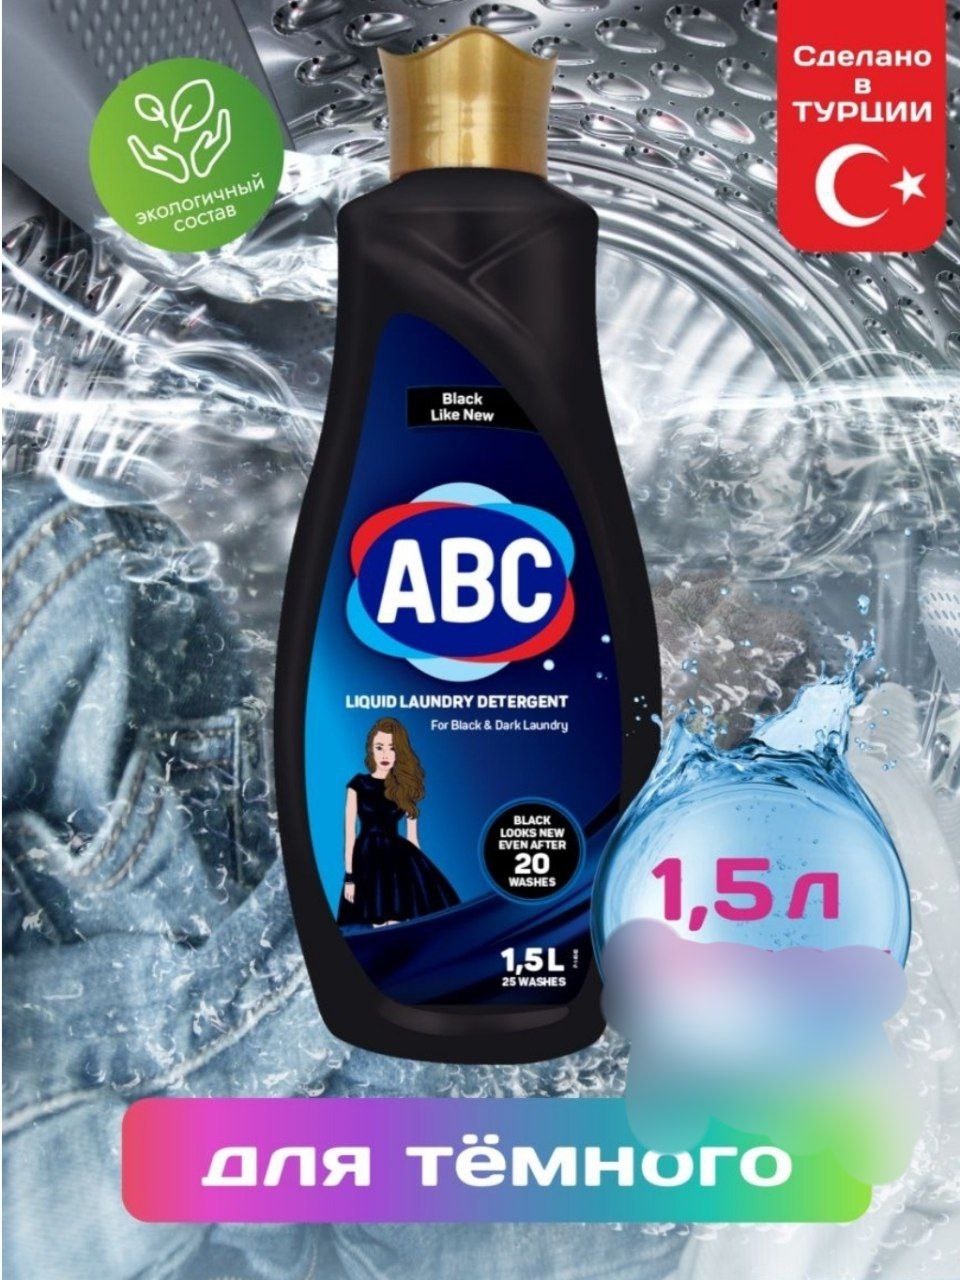 АВС жидкий порошок для черного 1,5 л - 450 ₽, заказать онлайн.